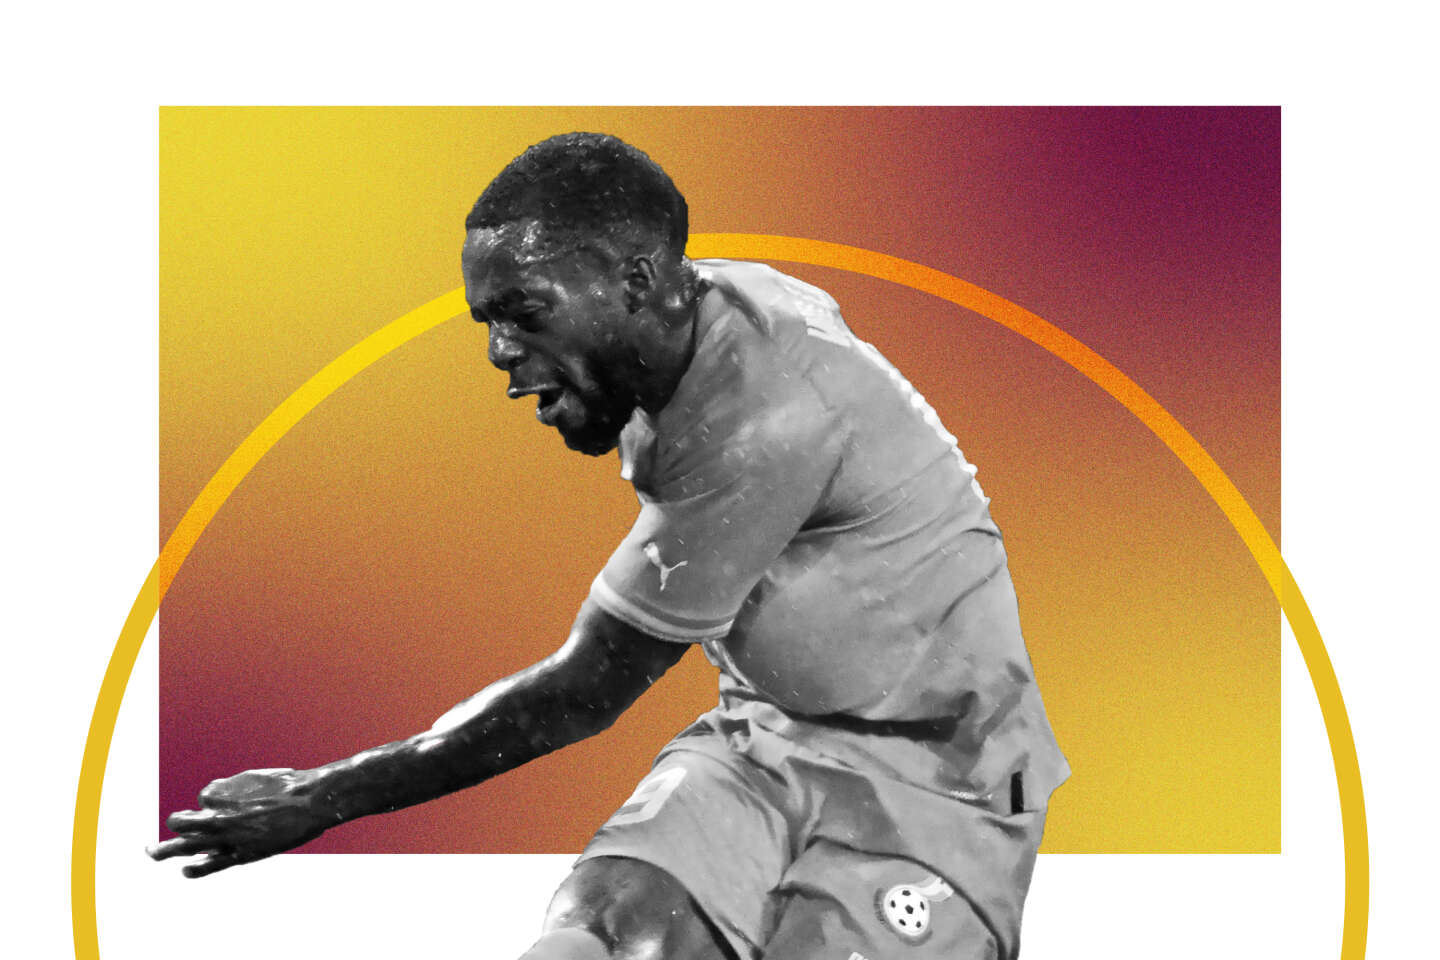 Le Ghana à la Coupe du monde 2022 : groupe, joueur, entraîneur, date… tout savoir sur l’équipe